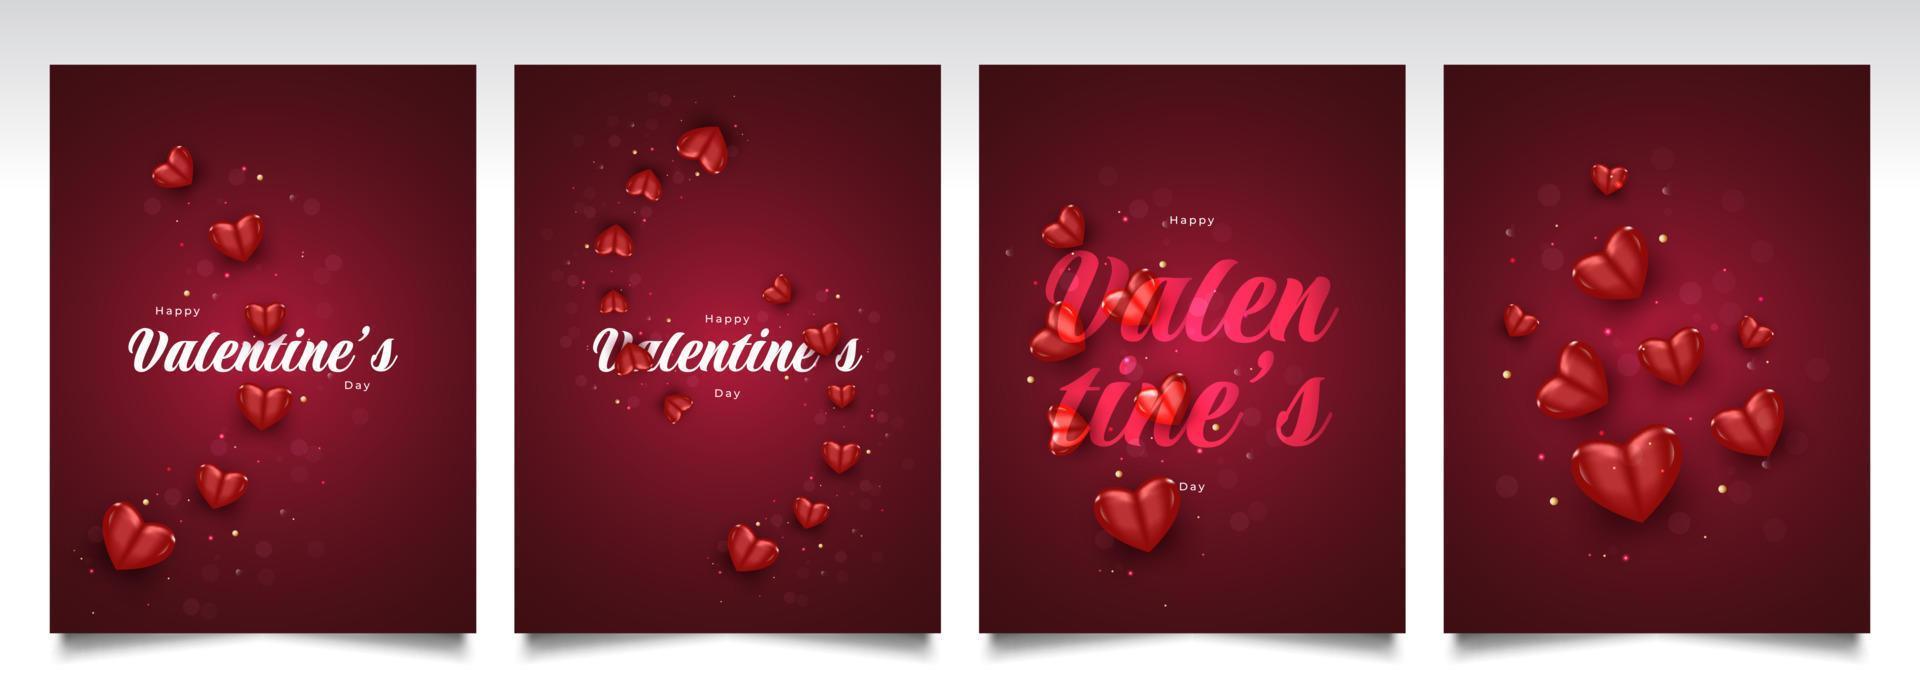 cartão de dia dos namorados ou design de pôster com ilustração de coração vermelho 3d. feliz dia dos namorados tipografia vetor